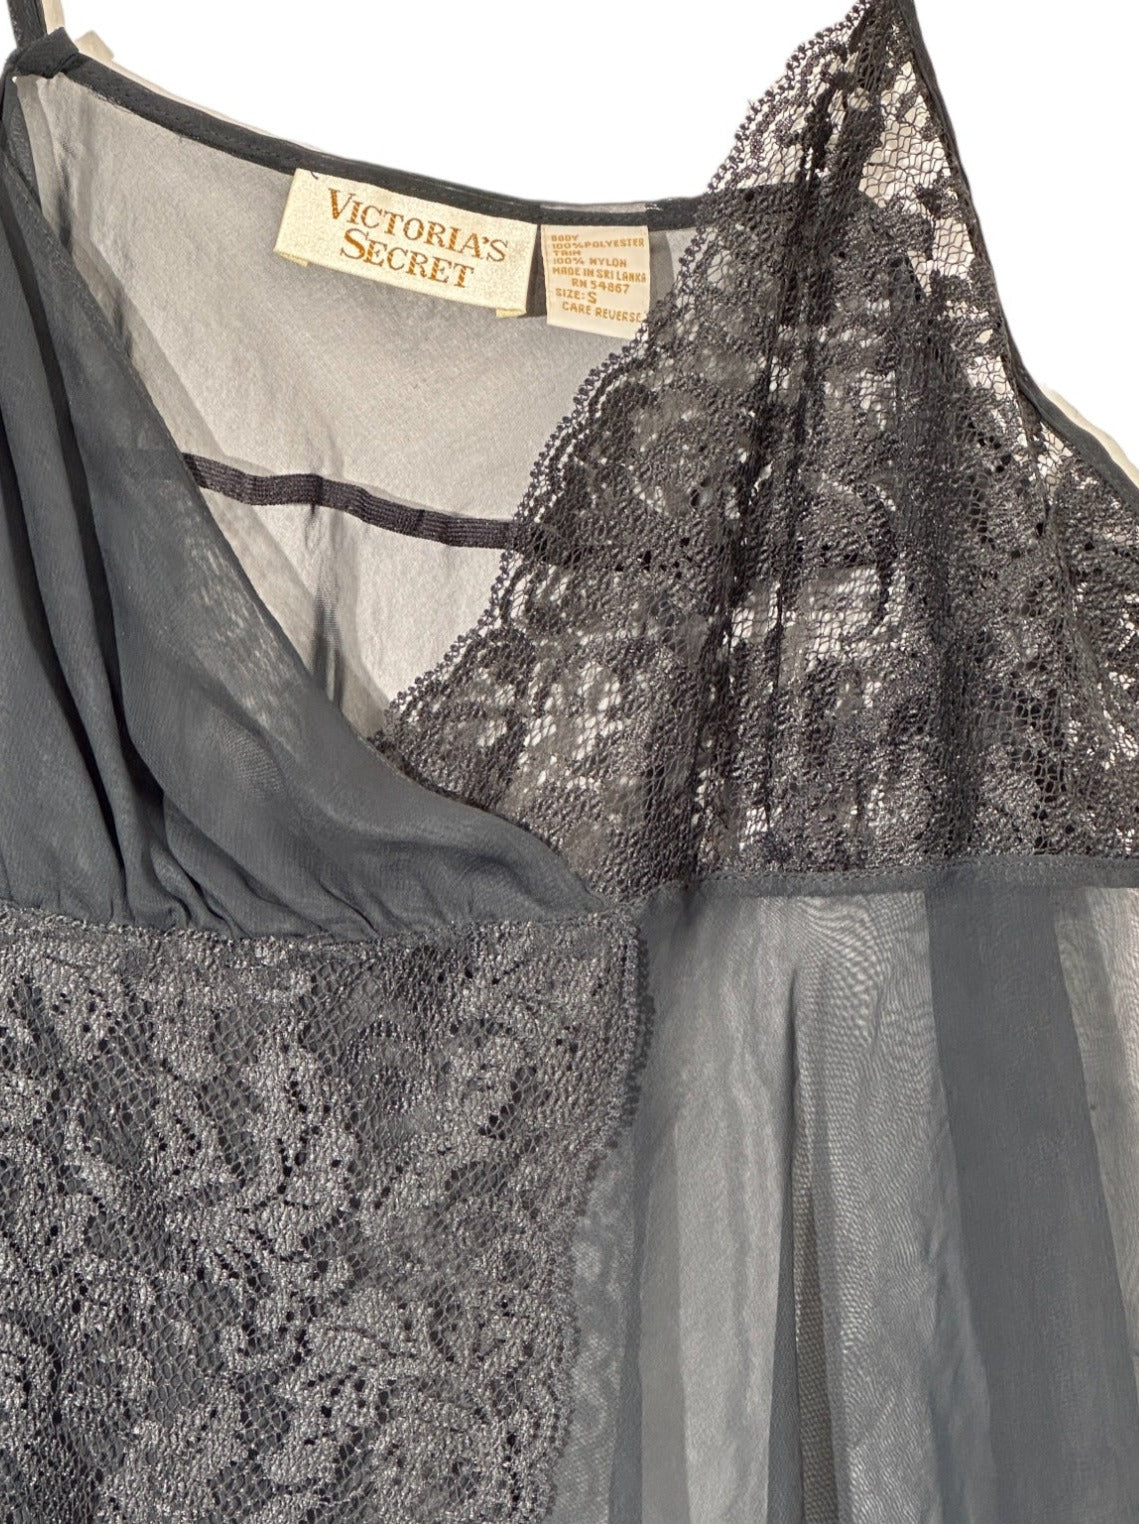 Black Vintage Victoria's Secret Lingerie Sheer Babydoll Camisole